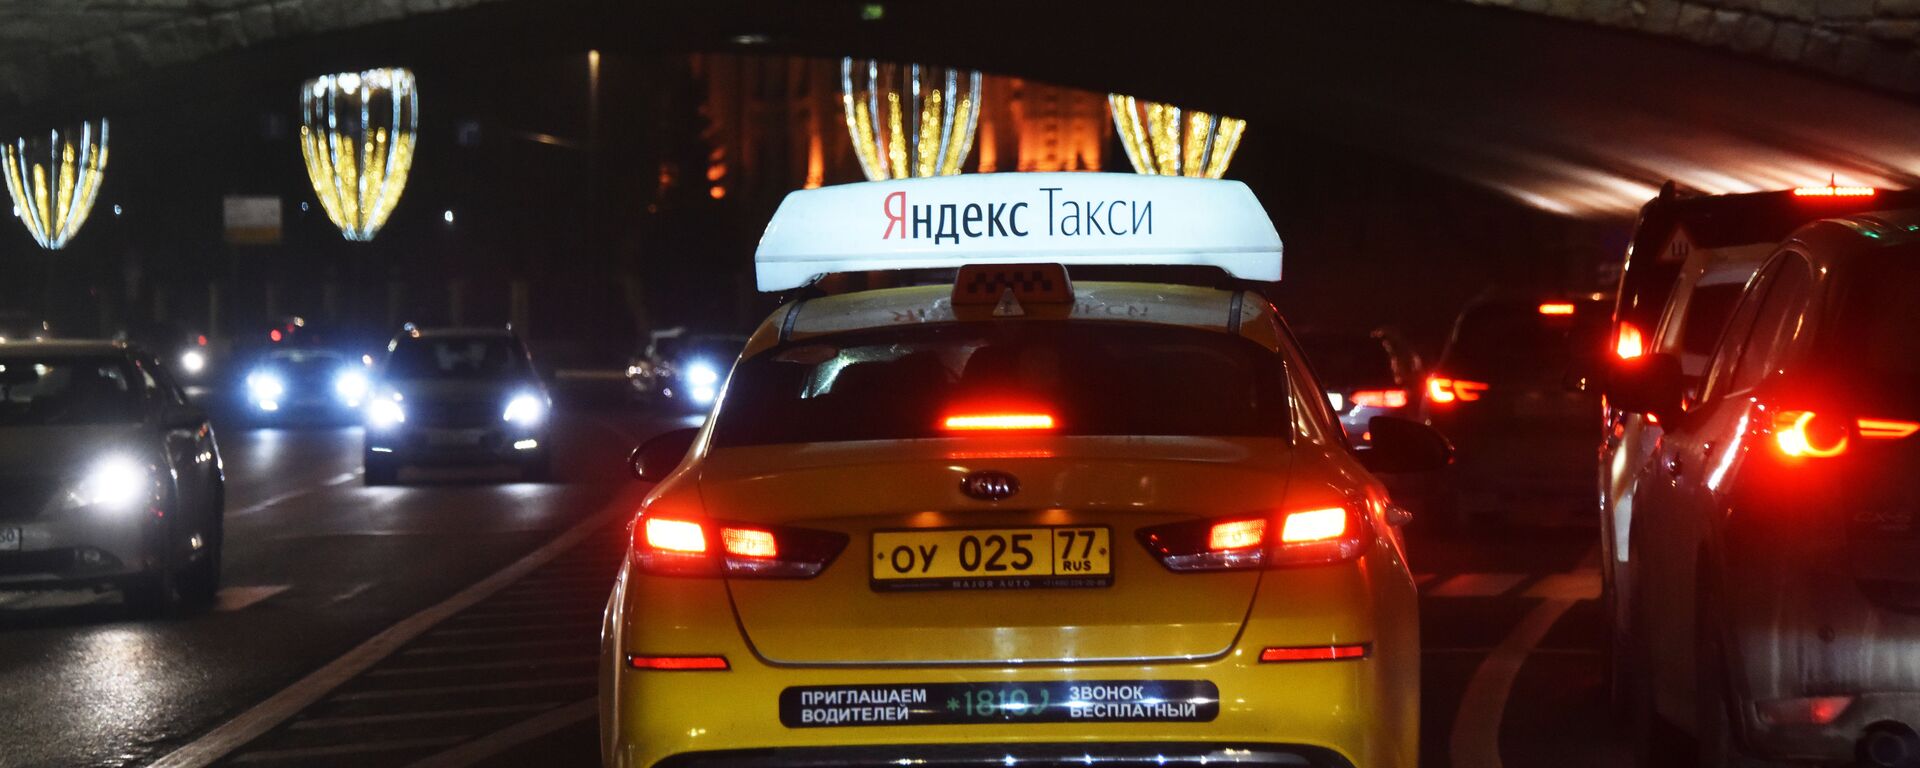 Автомобиль службы Яндекс Такси. - Sputnik Узбекистан, 1920, 25.02.2020